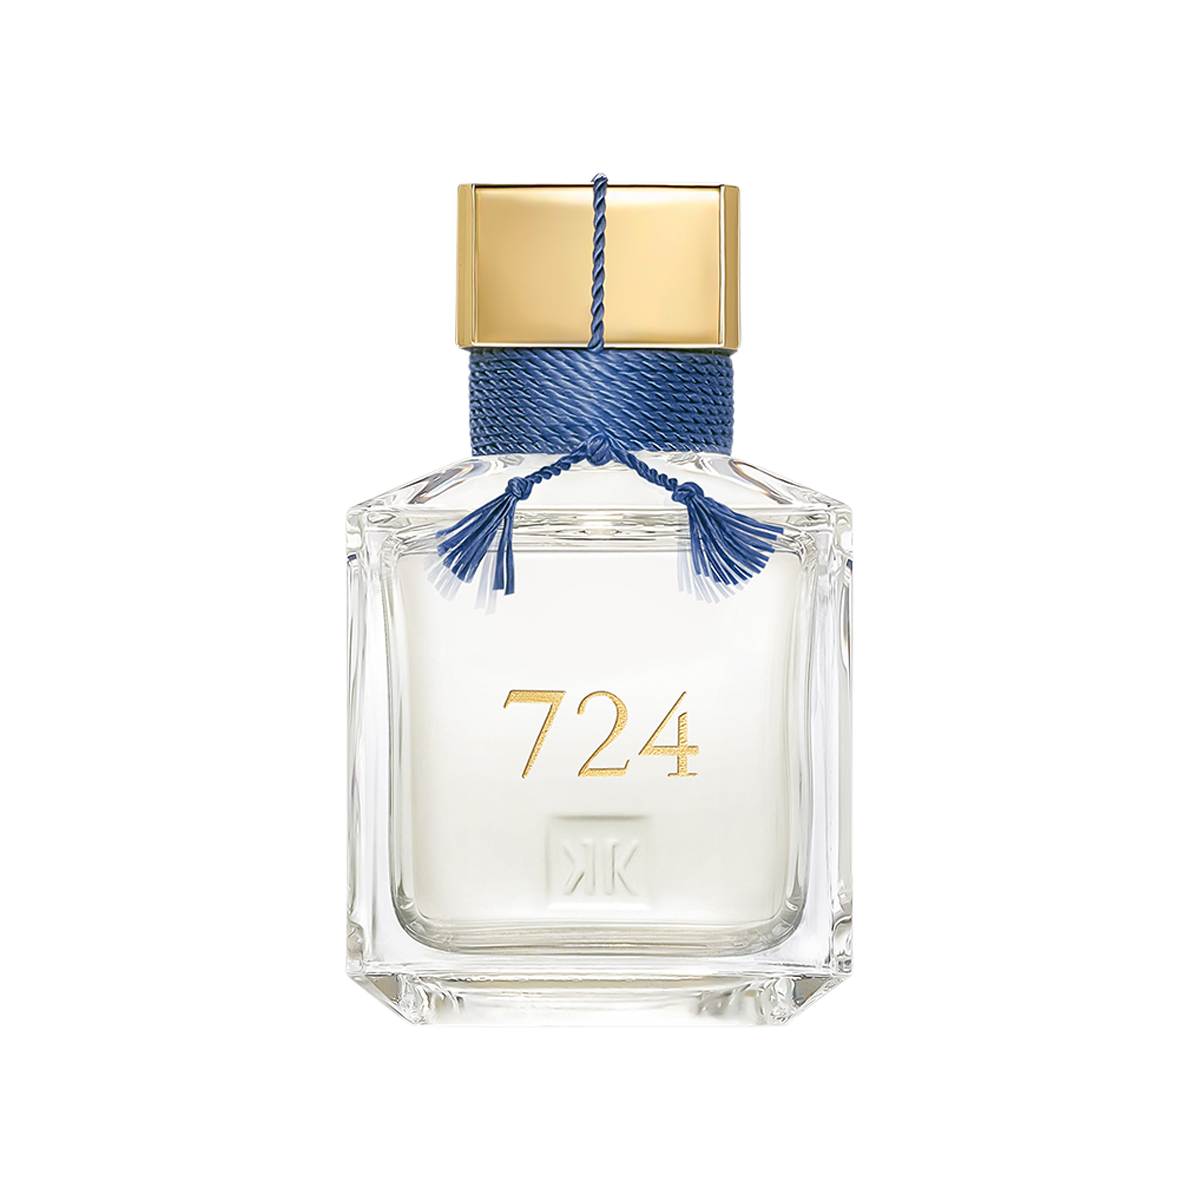 724 Eau de Parfum Limited Edition